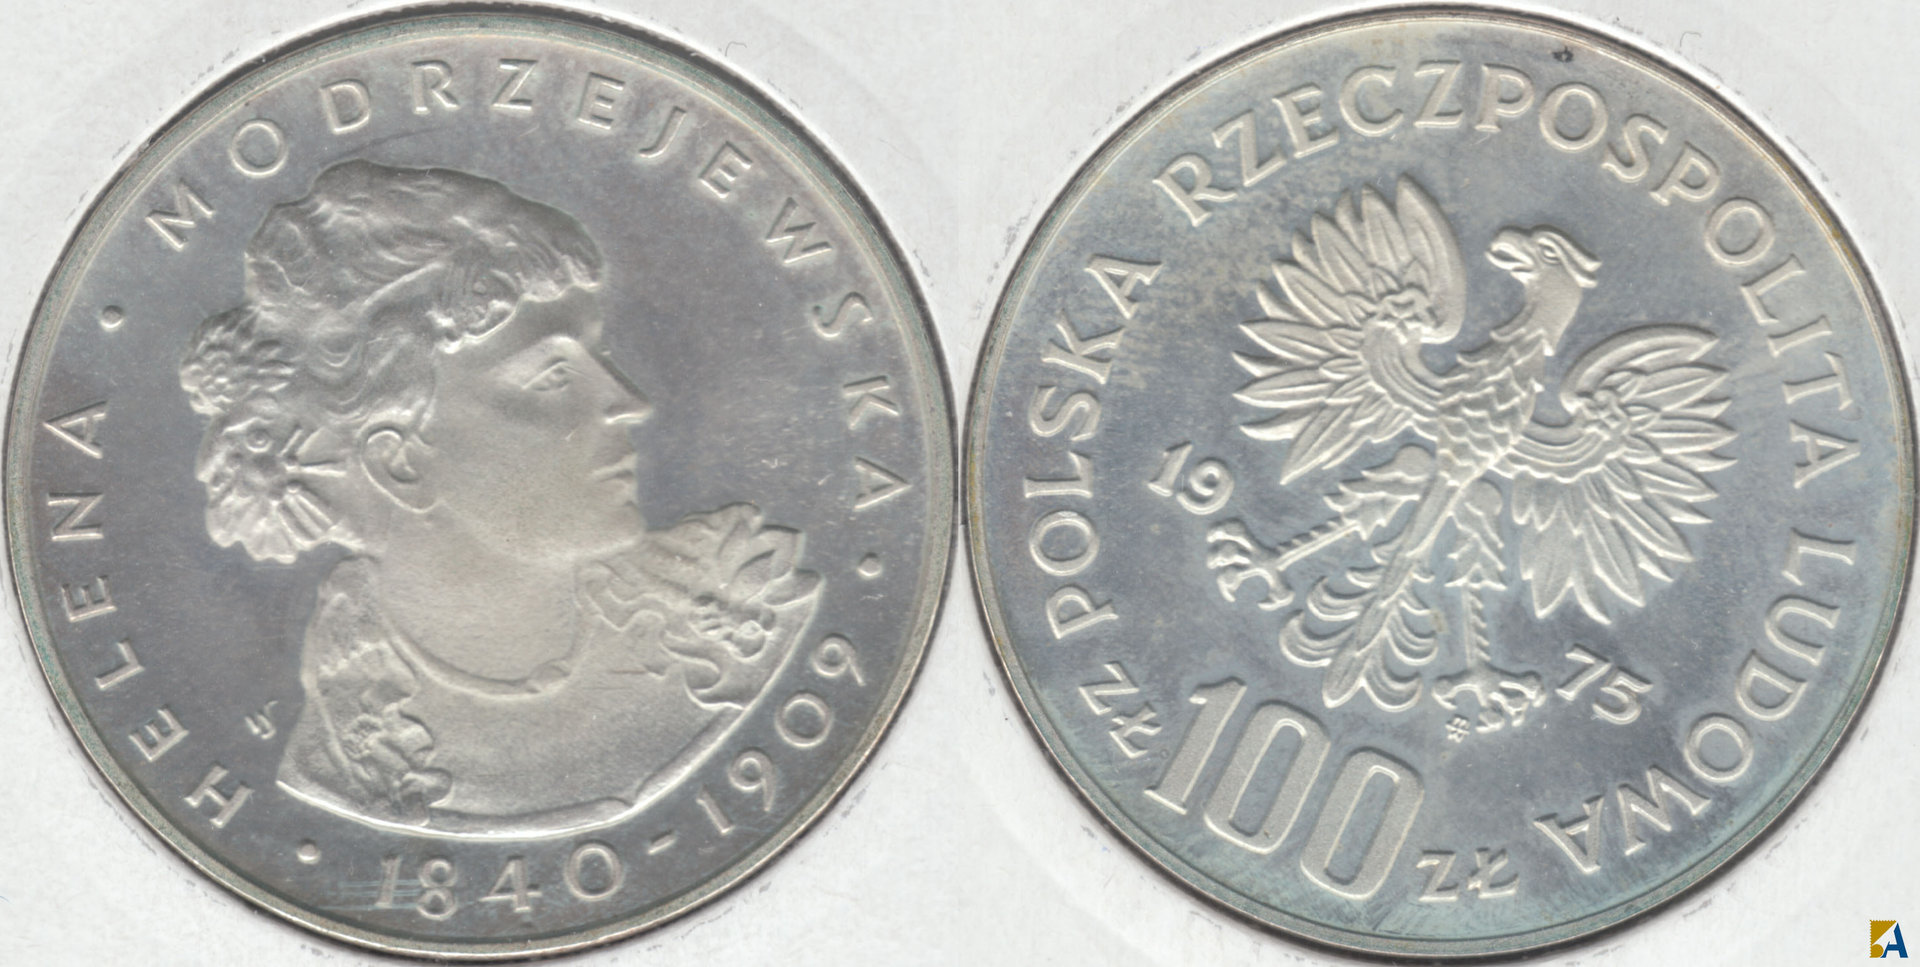 POLONIA - POLSKA. 100 ZLOTYCH DE 1975. PLATA 0.625. (4)